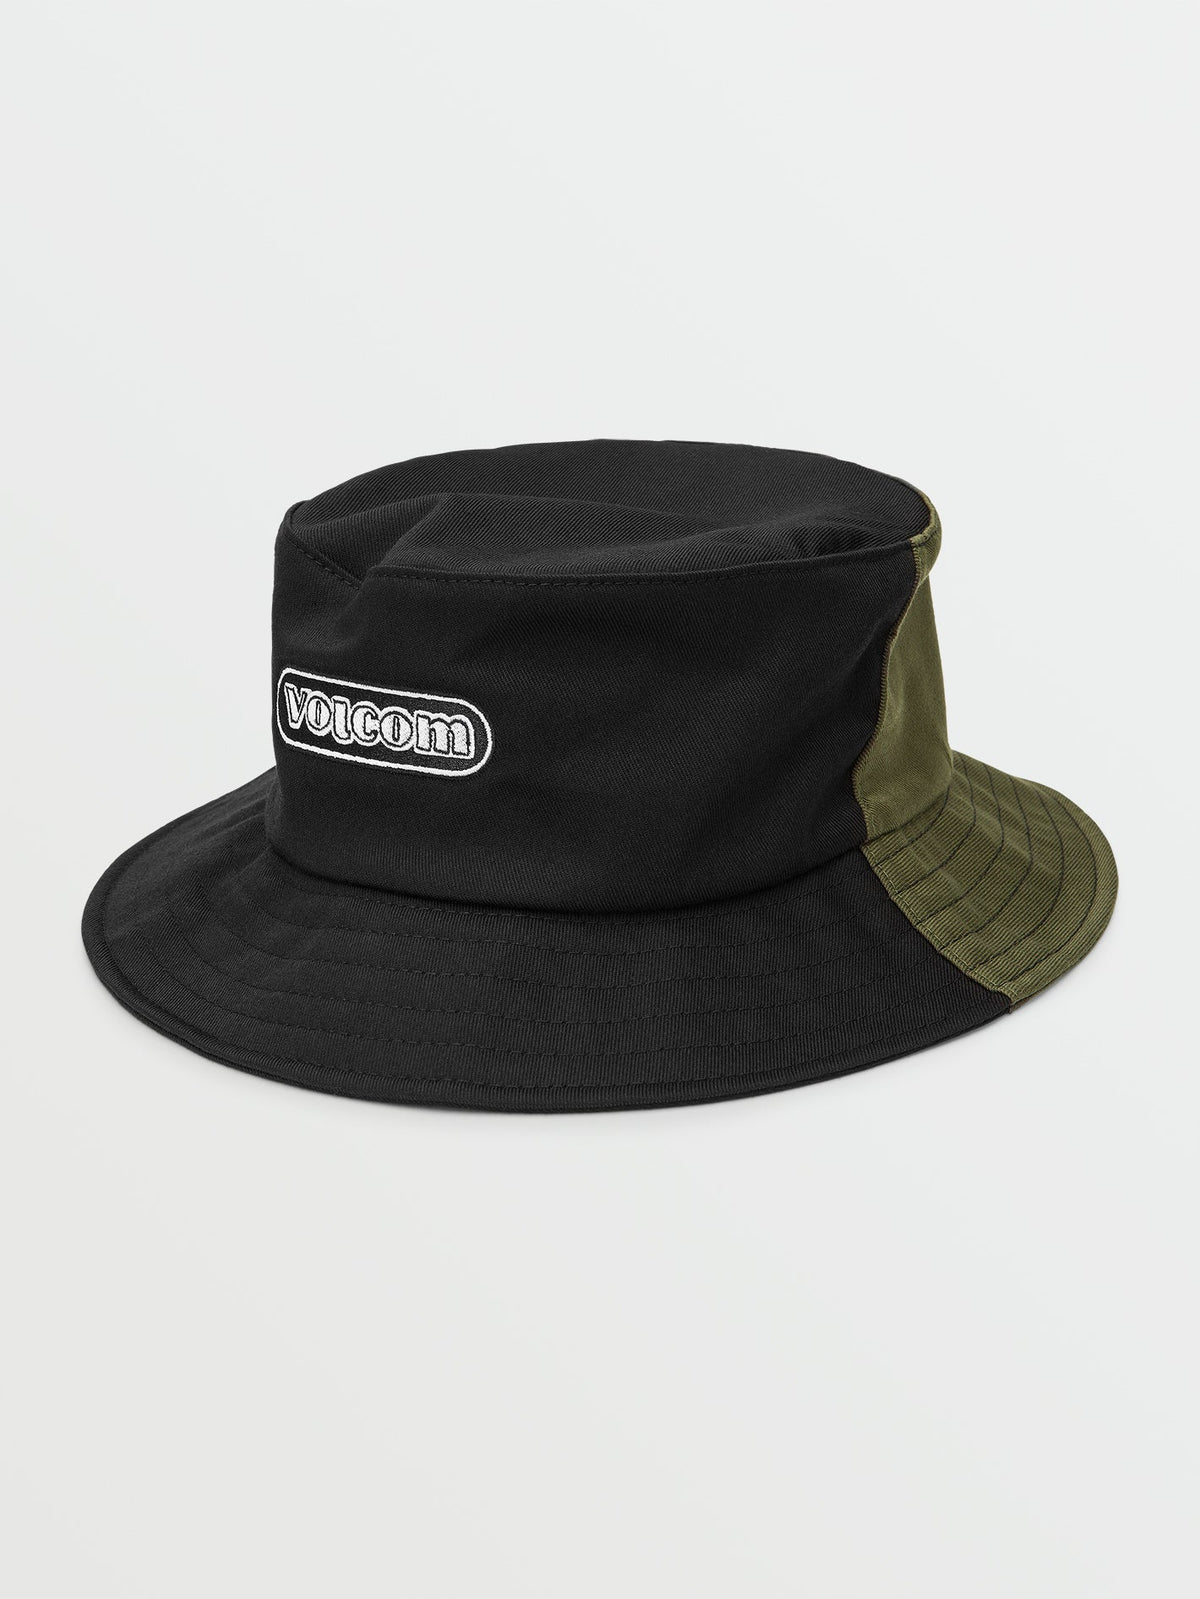 Volcom Ninetyfive Men's Bucket Hat Black